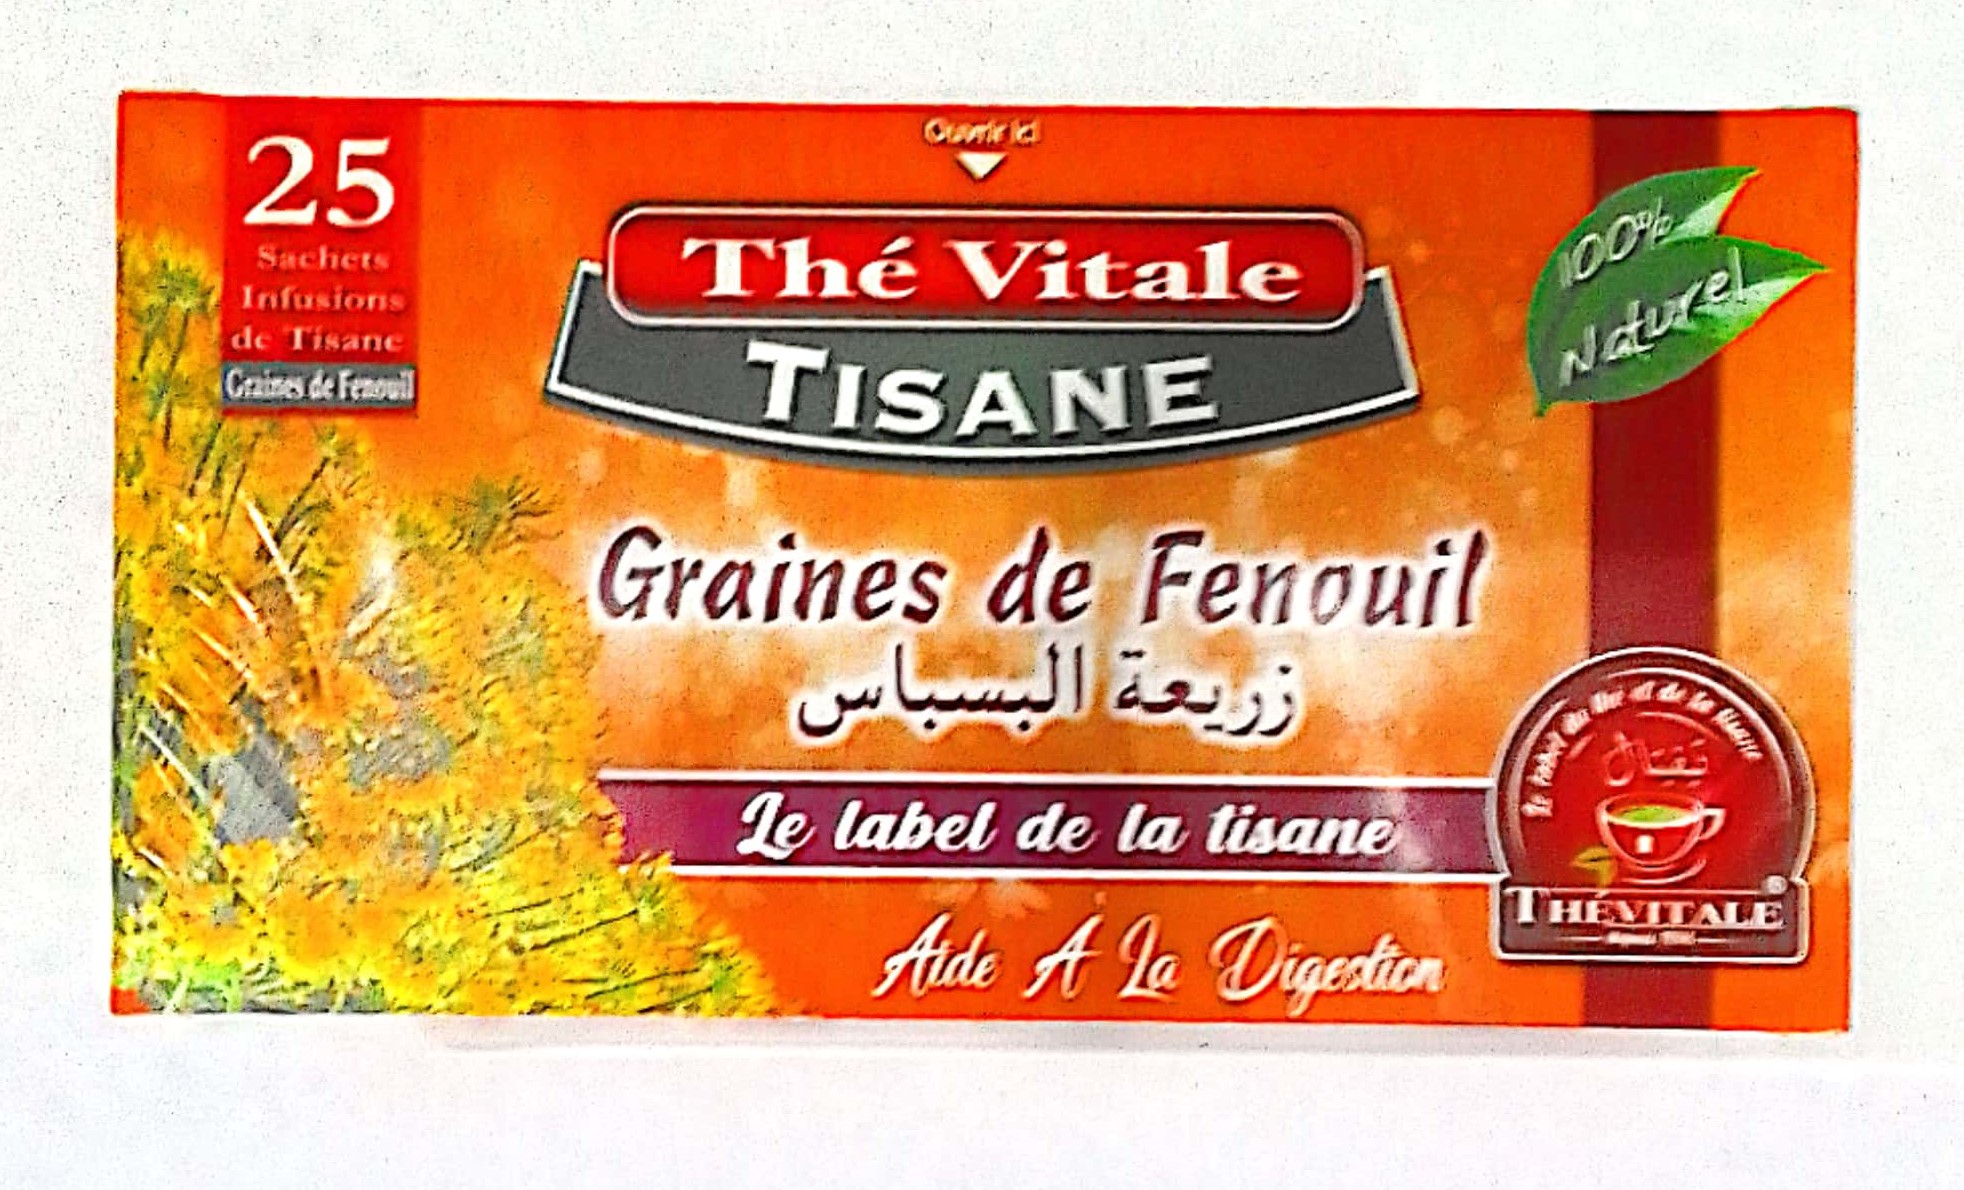 Thé Vital Tisane Graines de Fenouil 25 sachets infusions